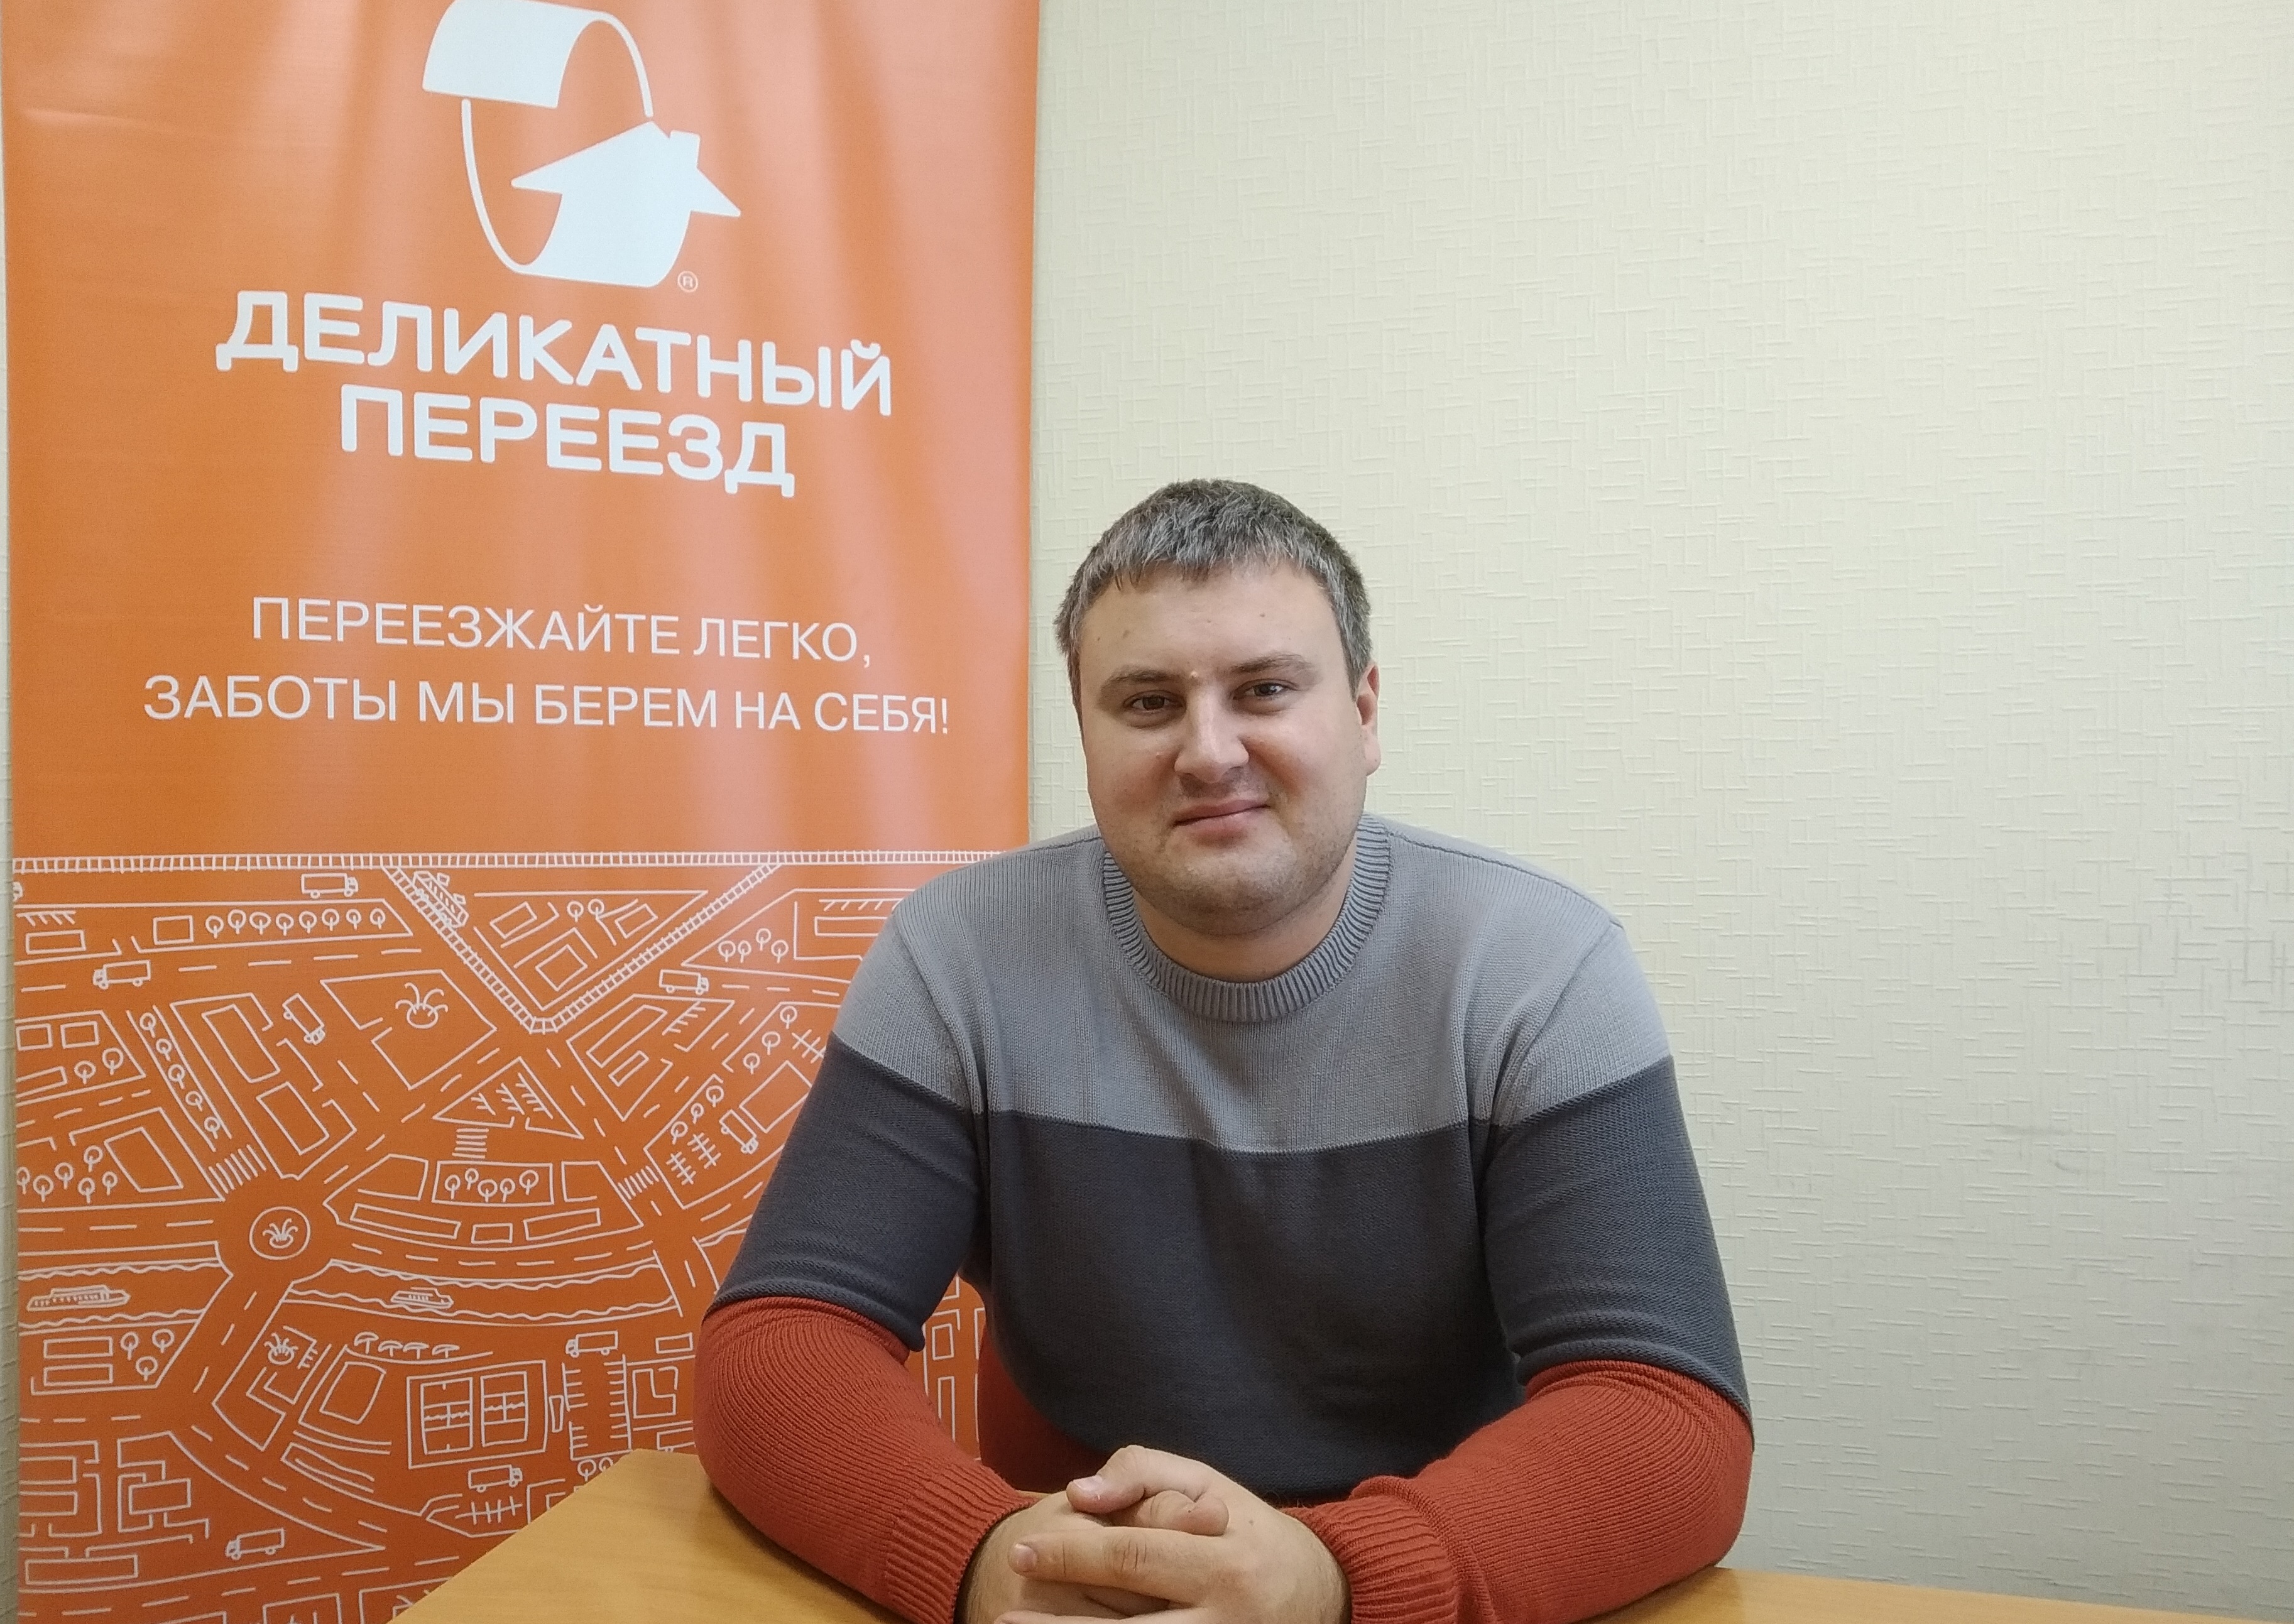 Генеральный директор ООО «Деликатный переезд Волга» Денис Маслов